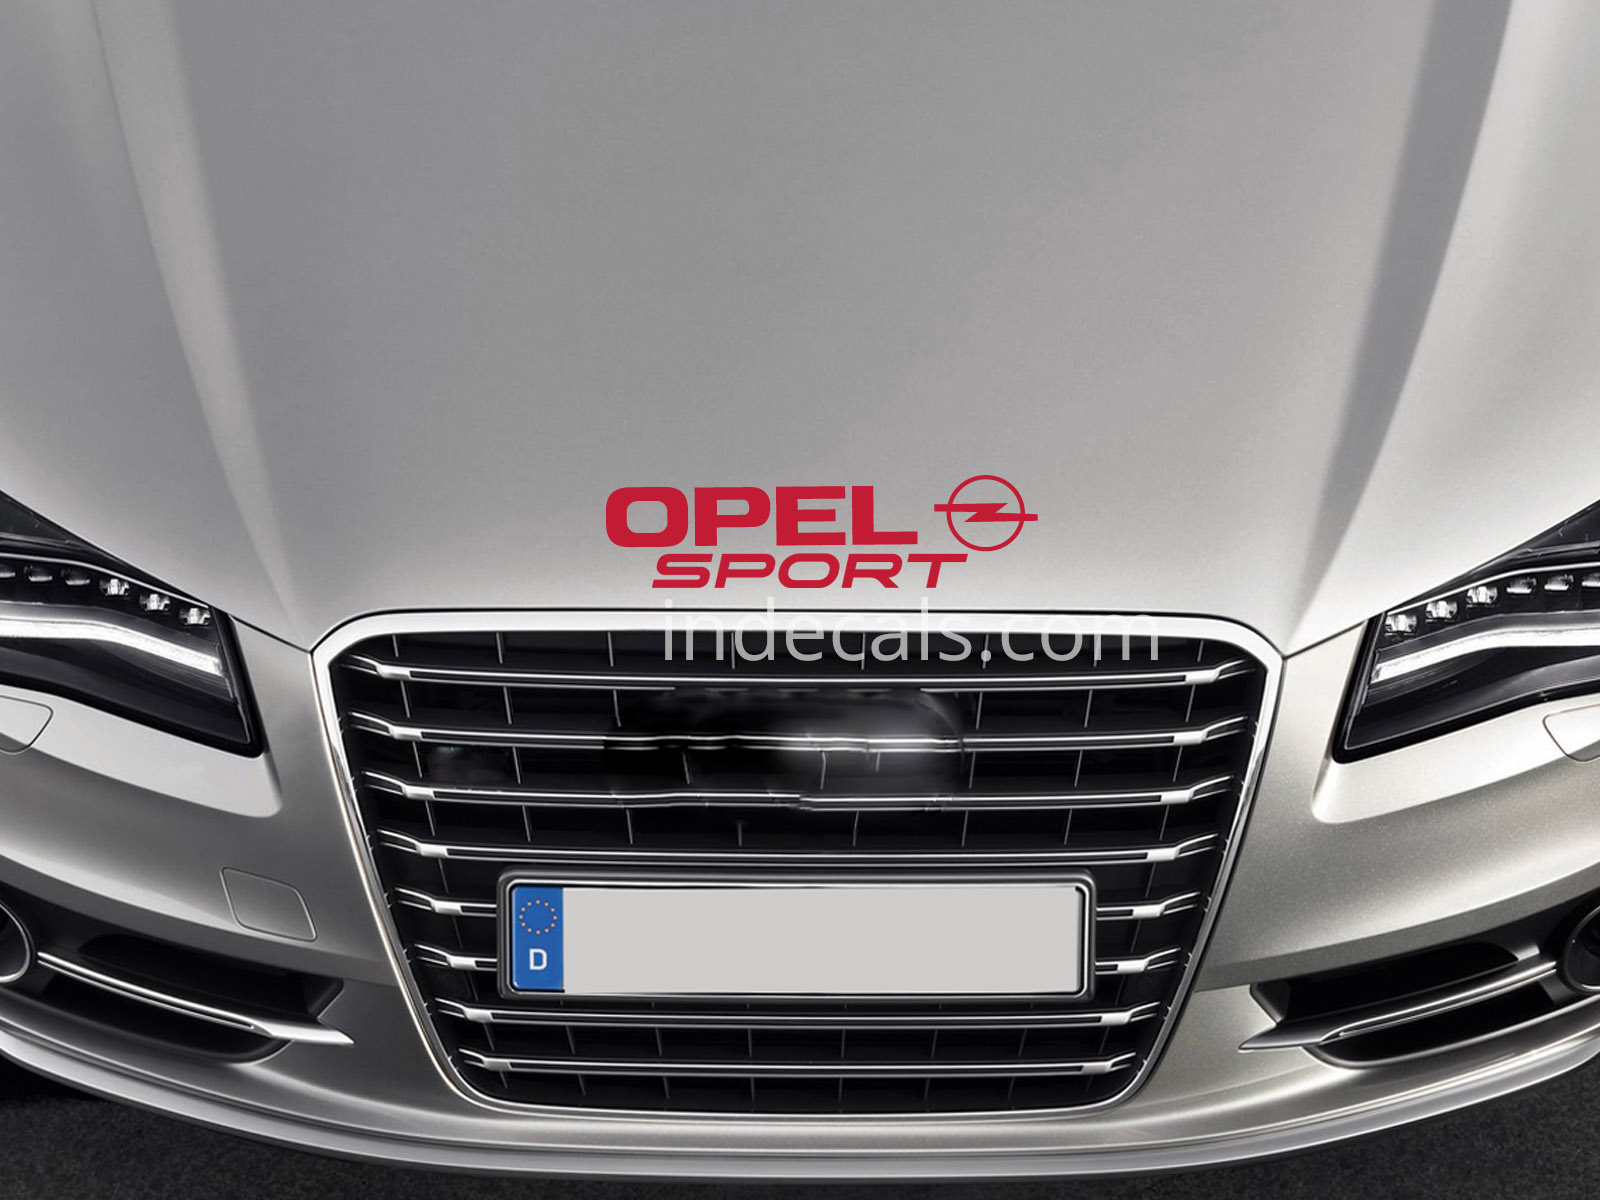 1 x Opel Sport Sticker for Bonnet - Red